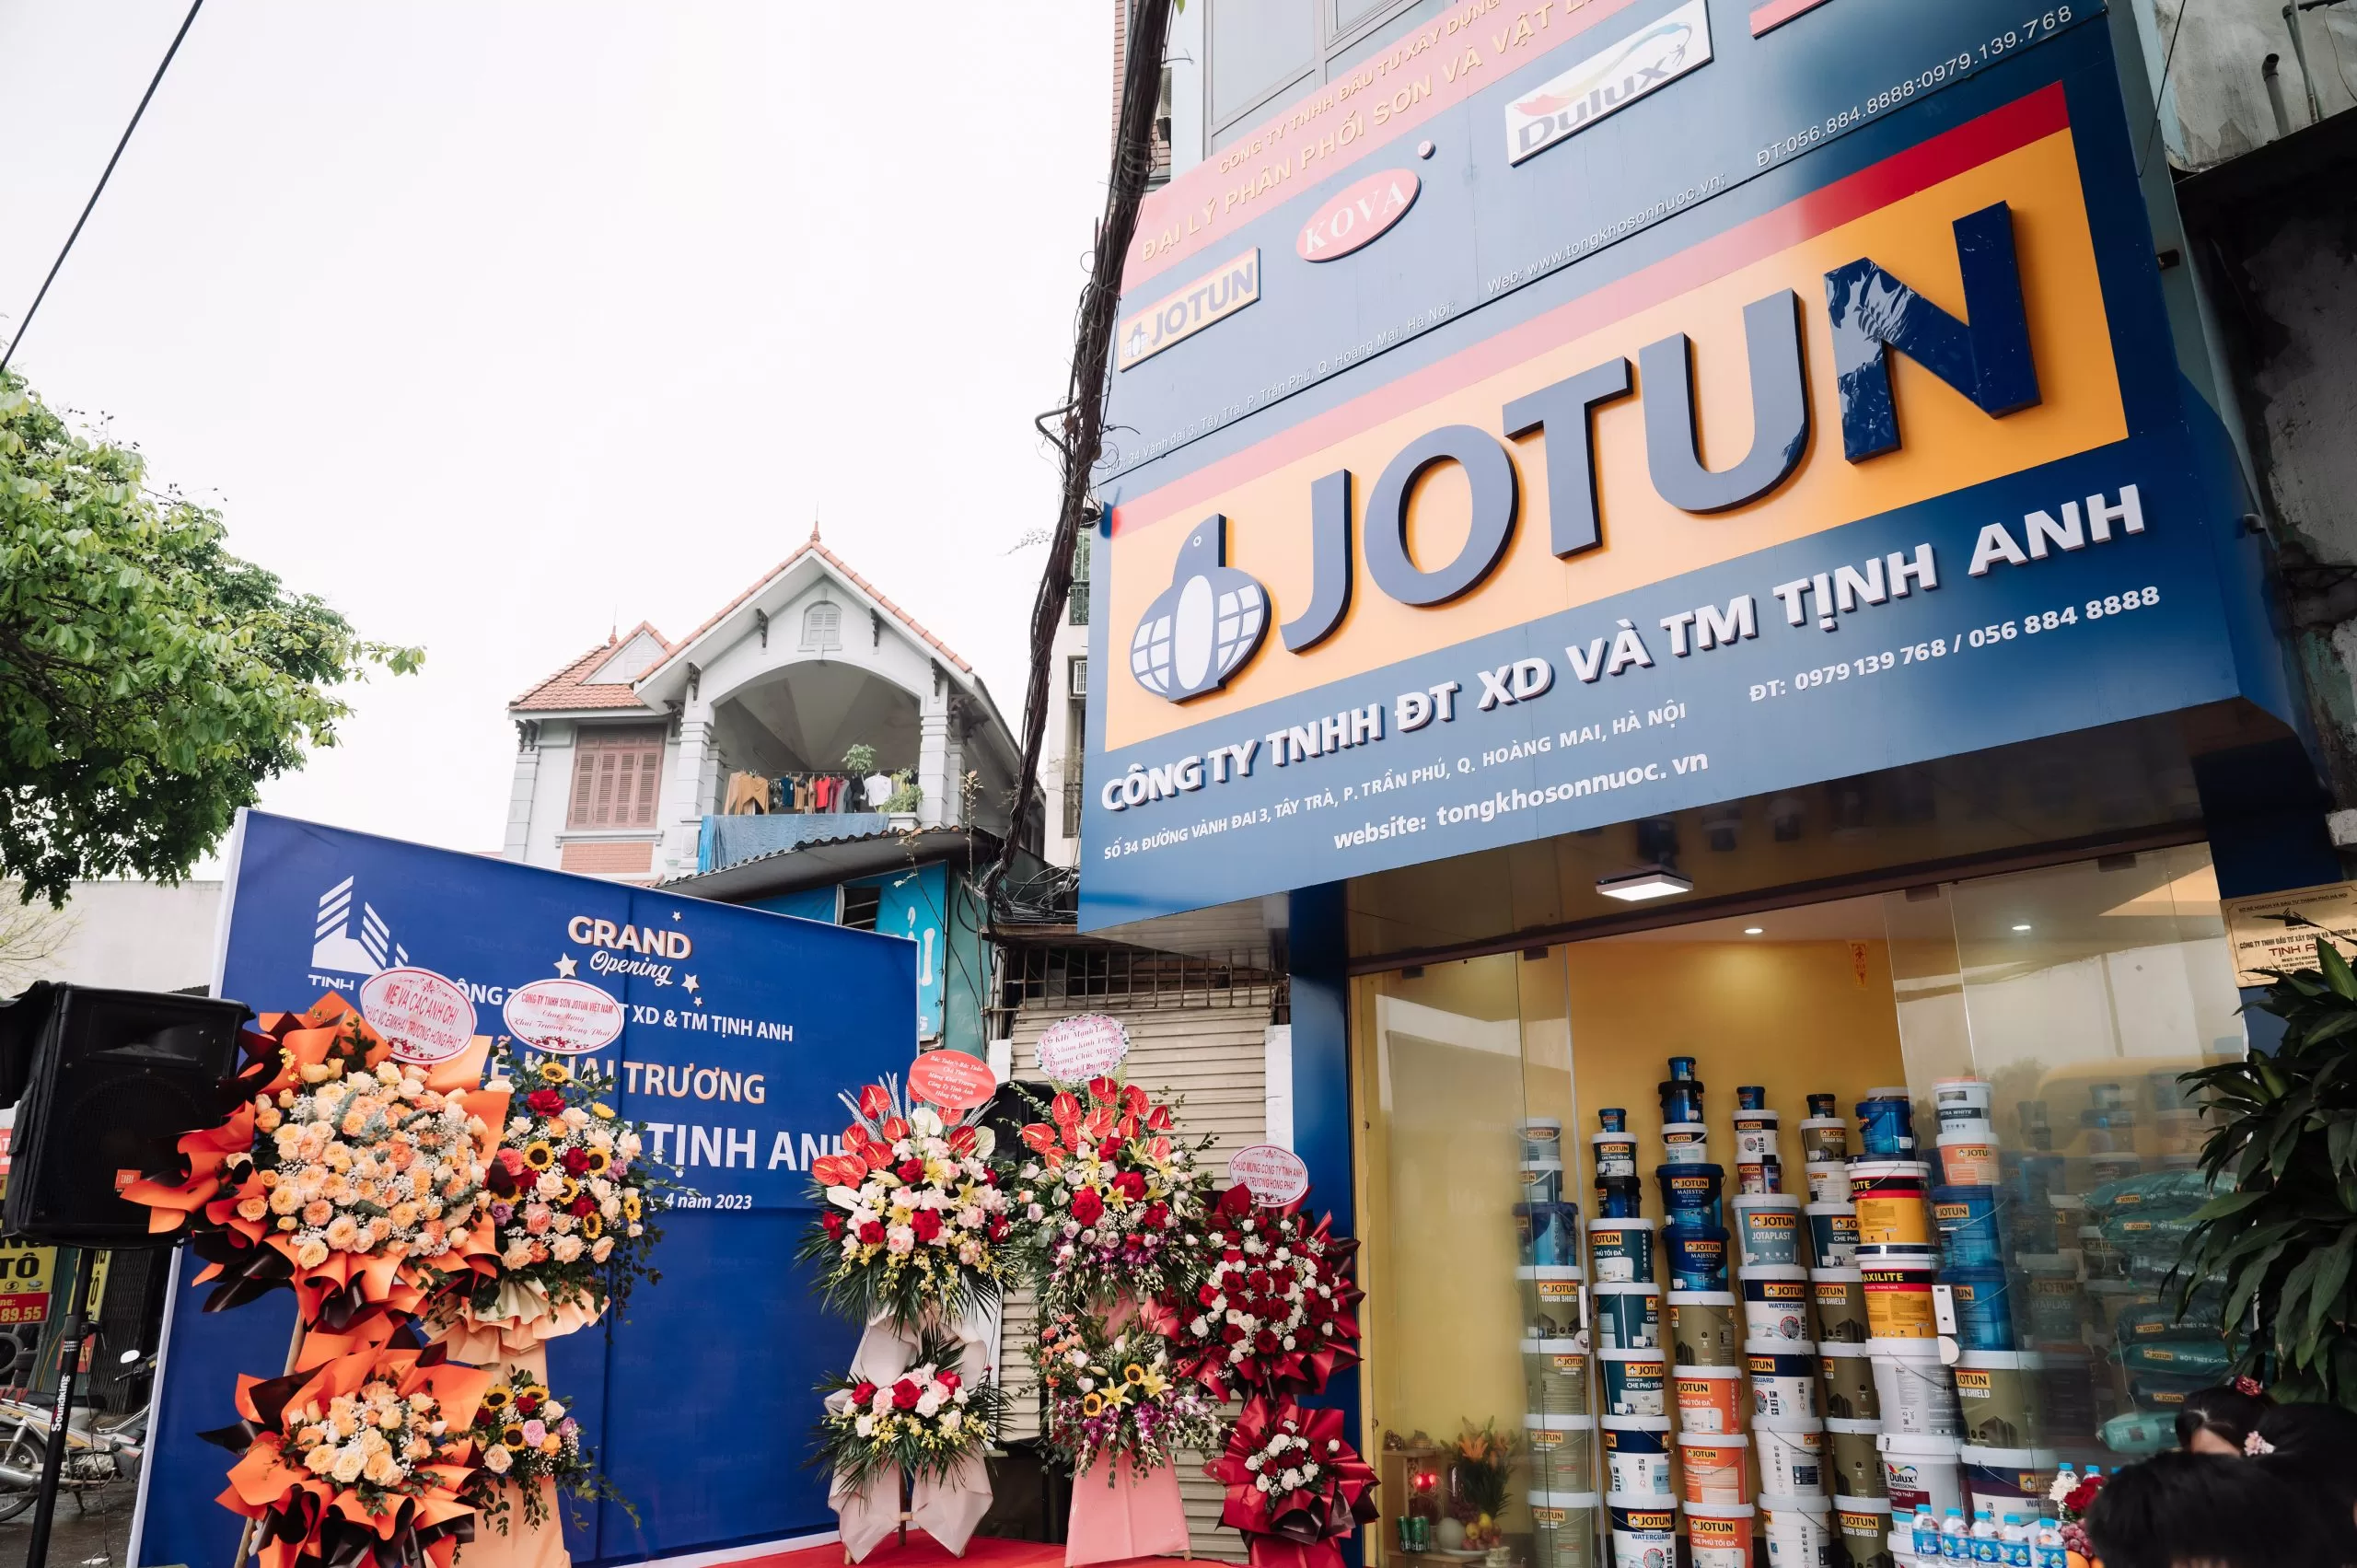 Cửa hàng sơn Jotun tại Hoàng Mai - Tịnh Anh